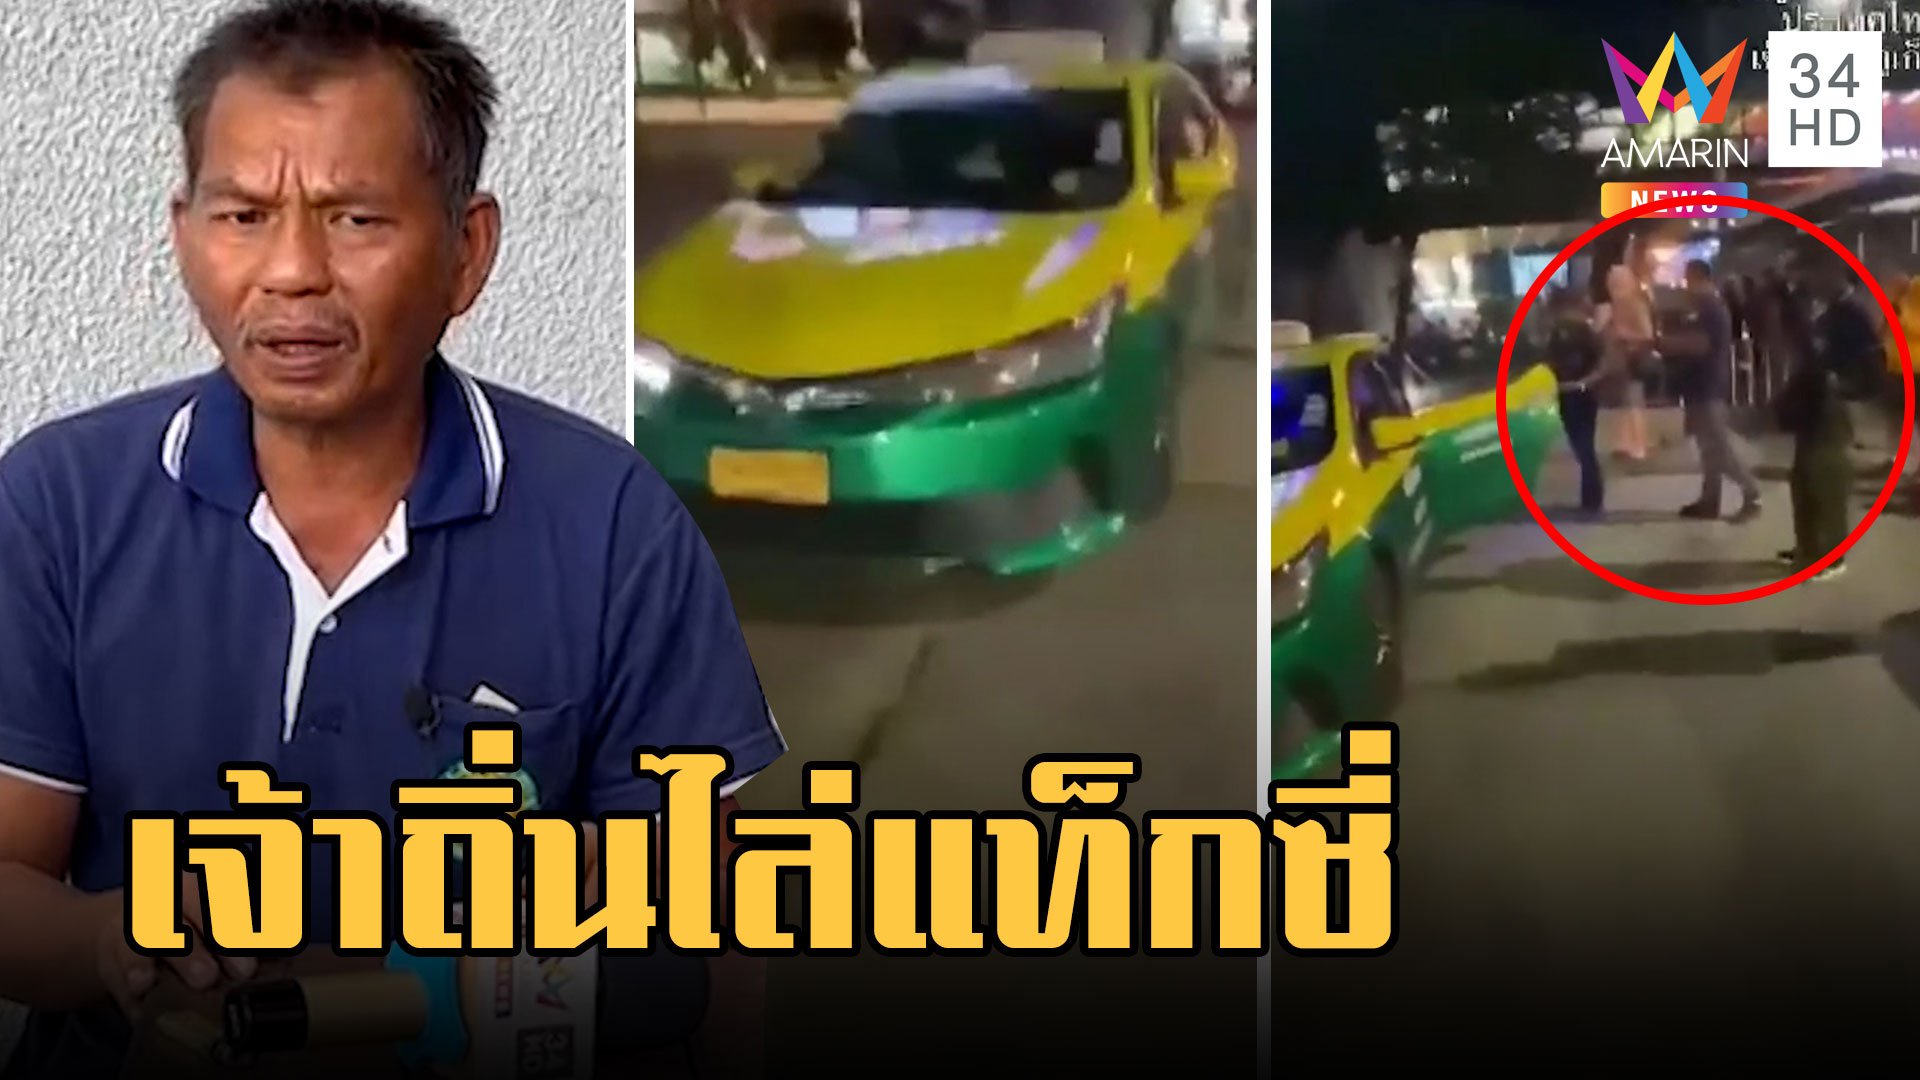 แท็กซี่ผวา! เจ้าถิ่นล้อมรถไล่ผู้โดยสารต่างชาติลงจากรถ  | ข่าวเที่ยงอมรินทร์ | 25 มี.ค. 66 | AMARIN TVHD34